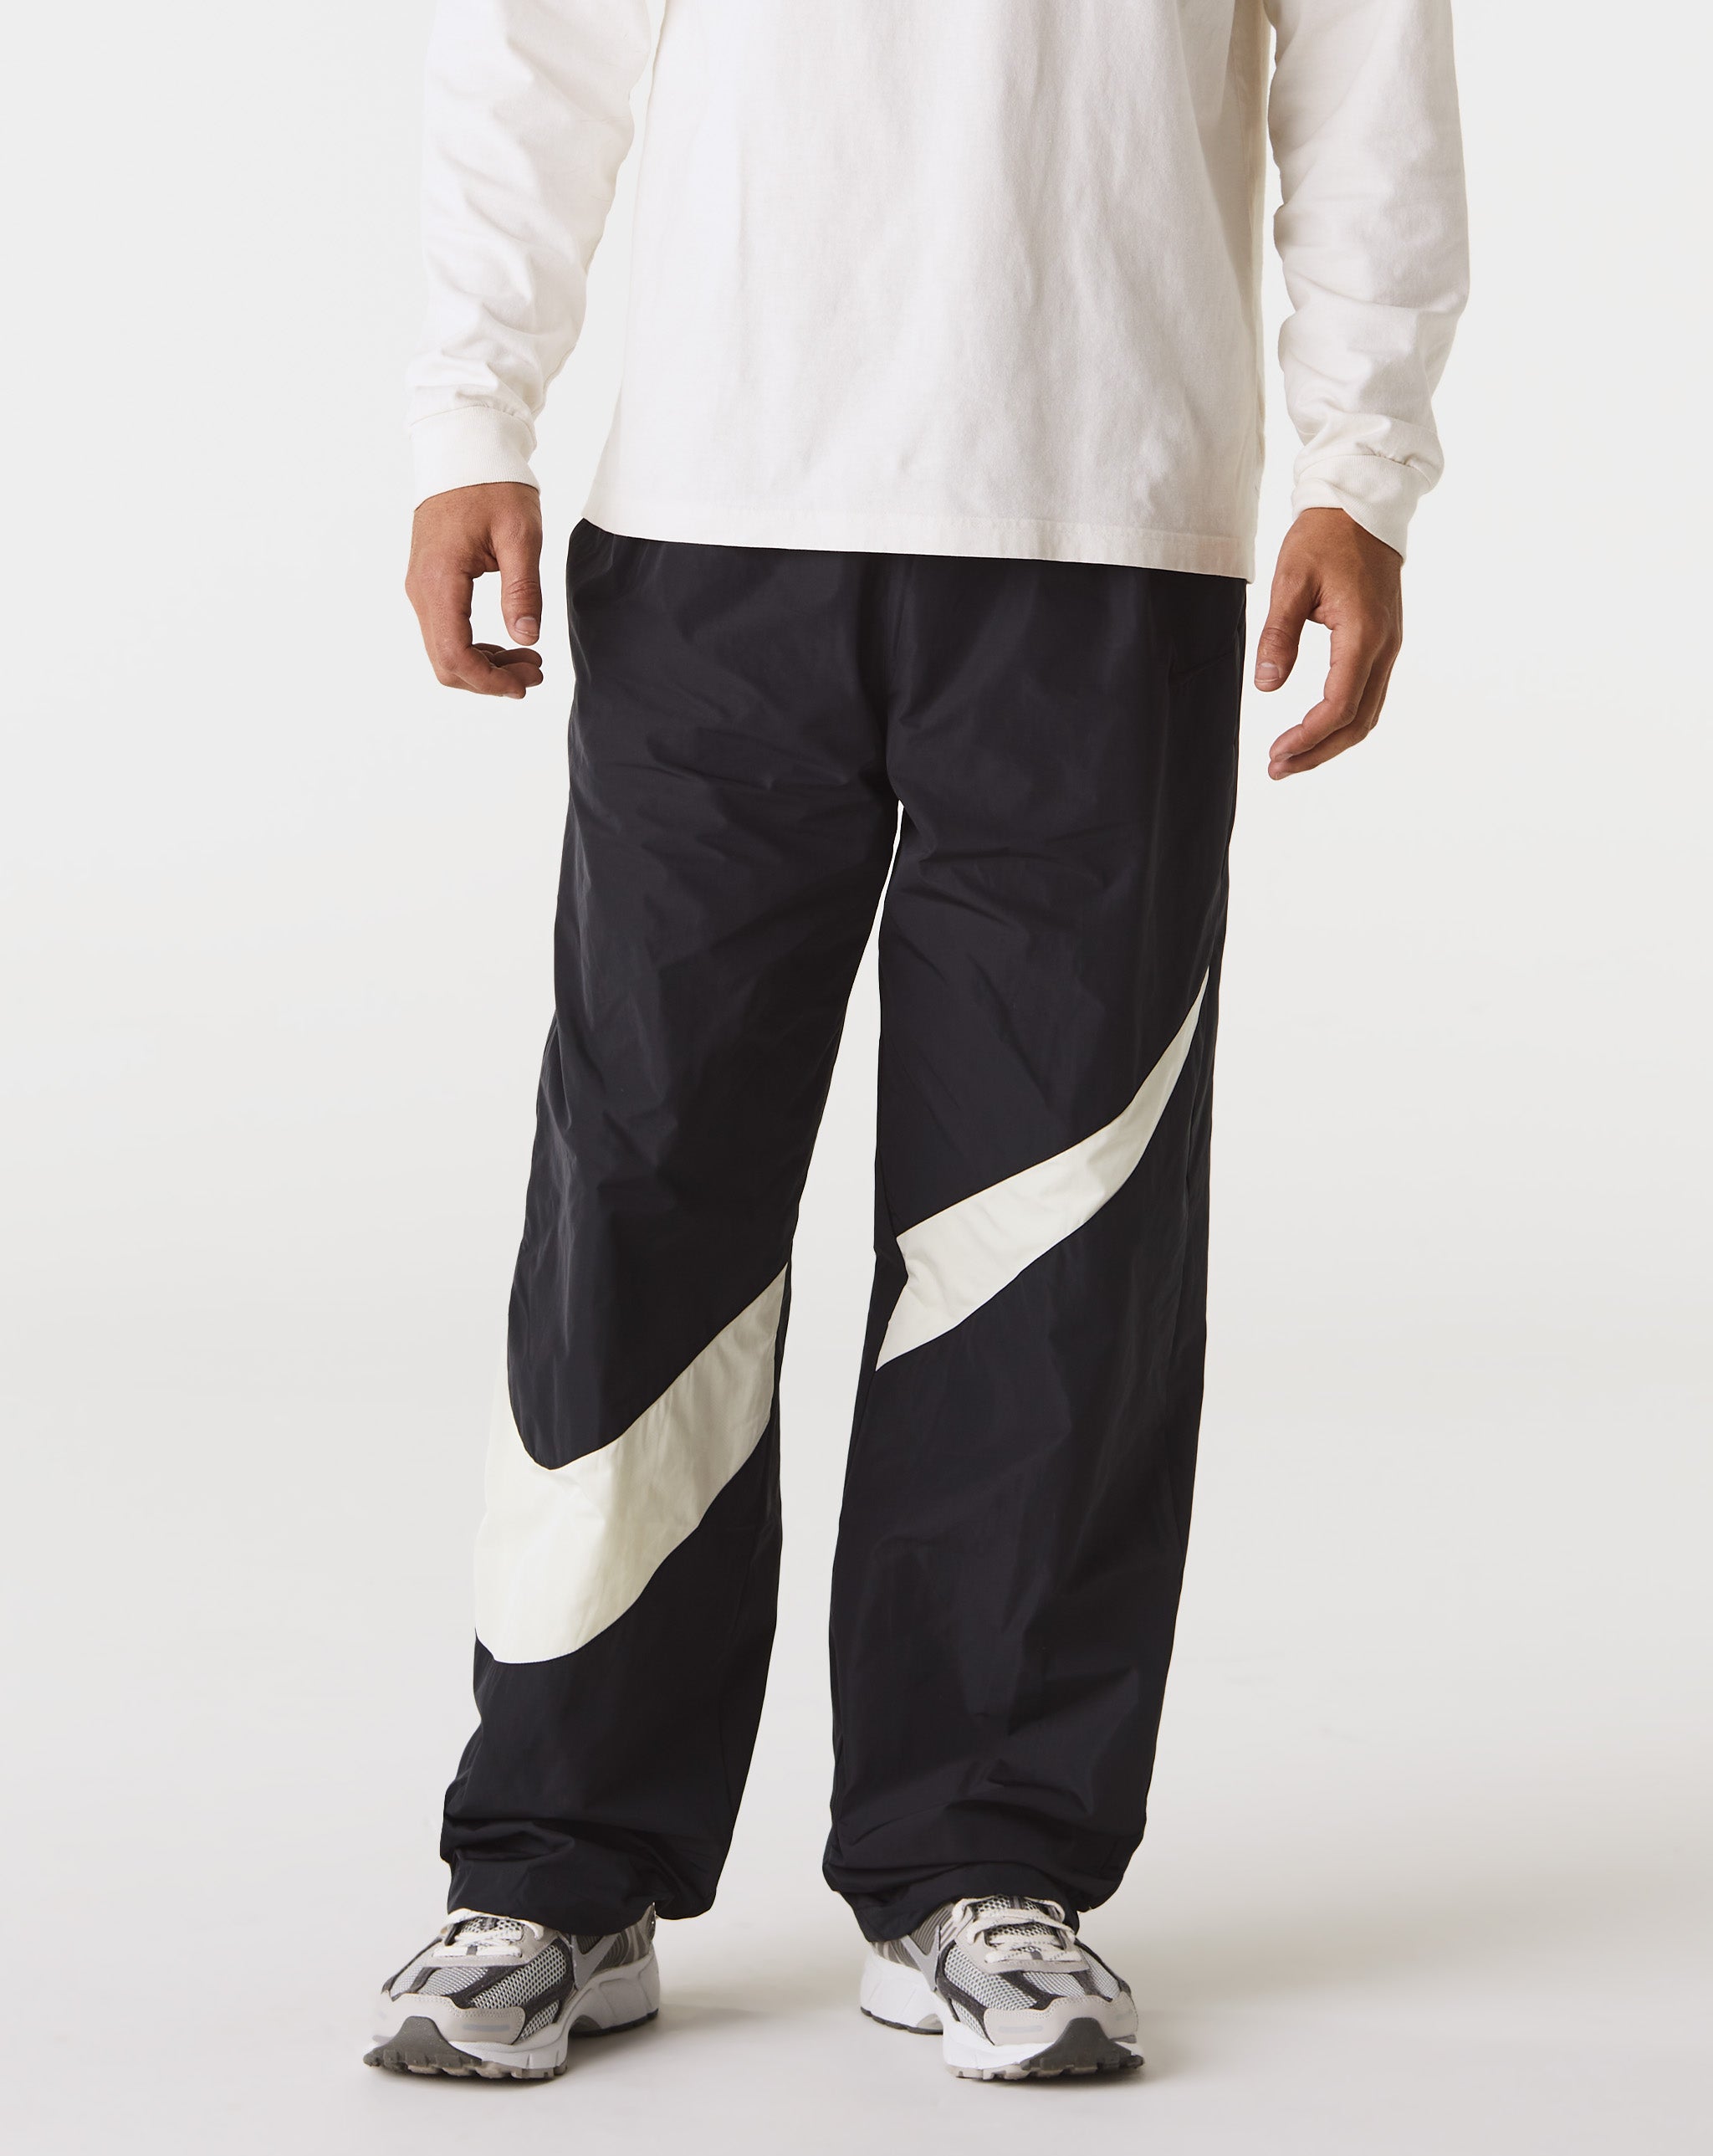 Nike Biquini Hot pants asos Cintura Alta Frente Ún  - Cheap Erlebniswelt-fliegenfischen Jordan outlet